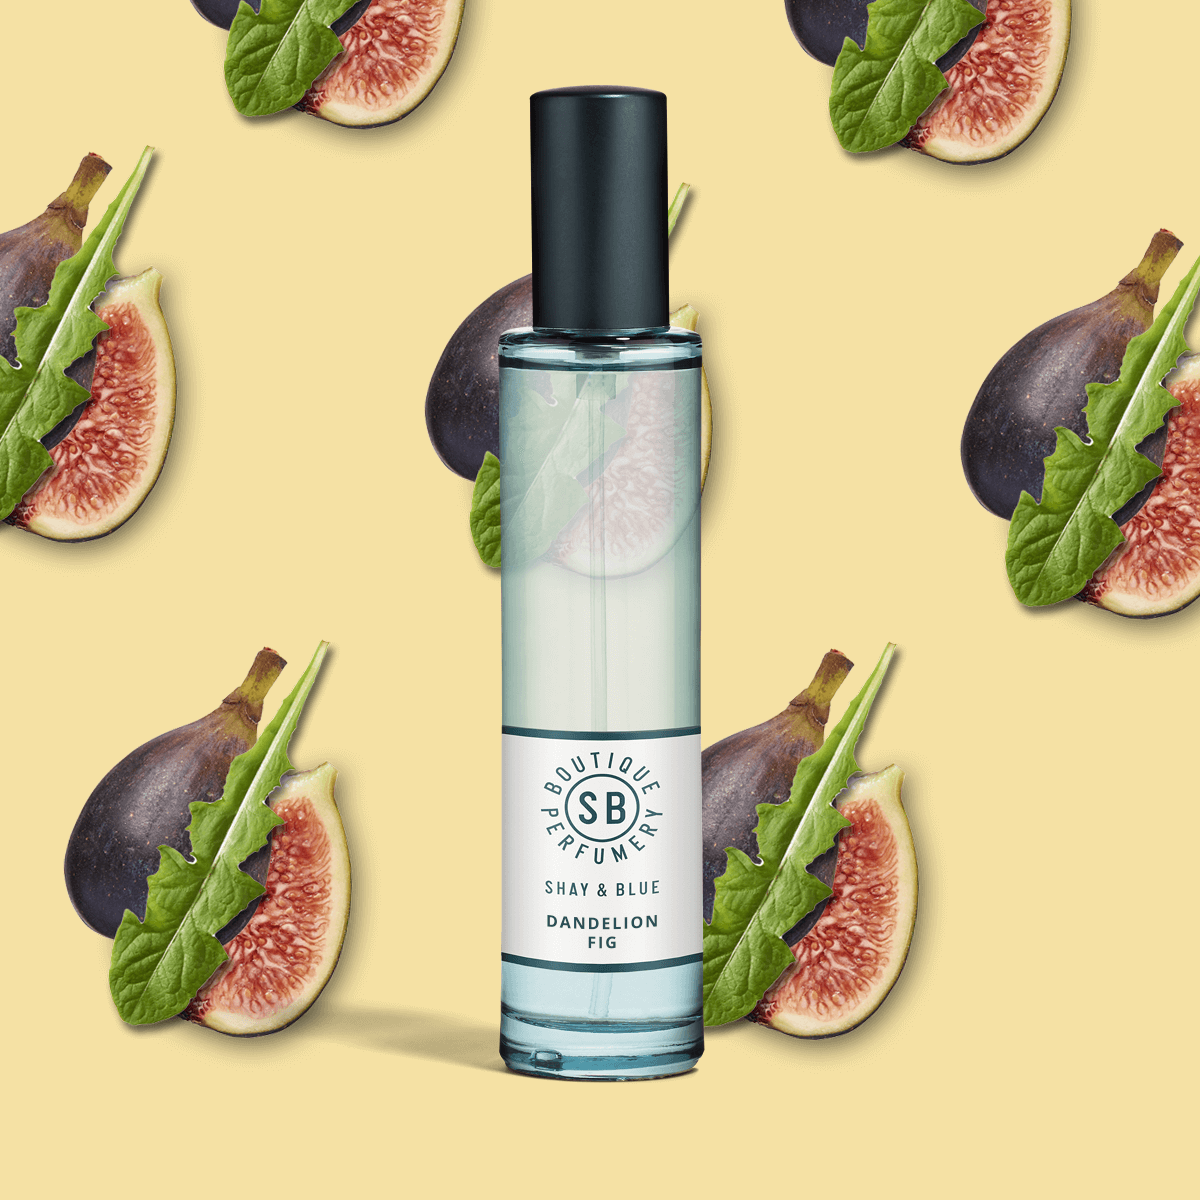 Dandelion Fig Fragrance 30ml | Fig and dandelion leaf blended with lemongrass, tomato vine and juniper | Clean All Gender Fragrance | Shay & Blue